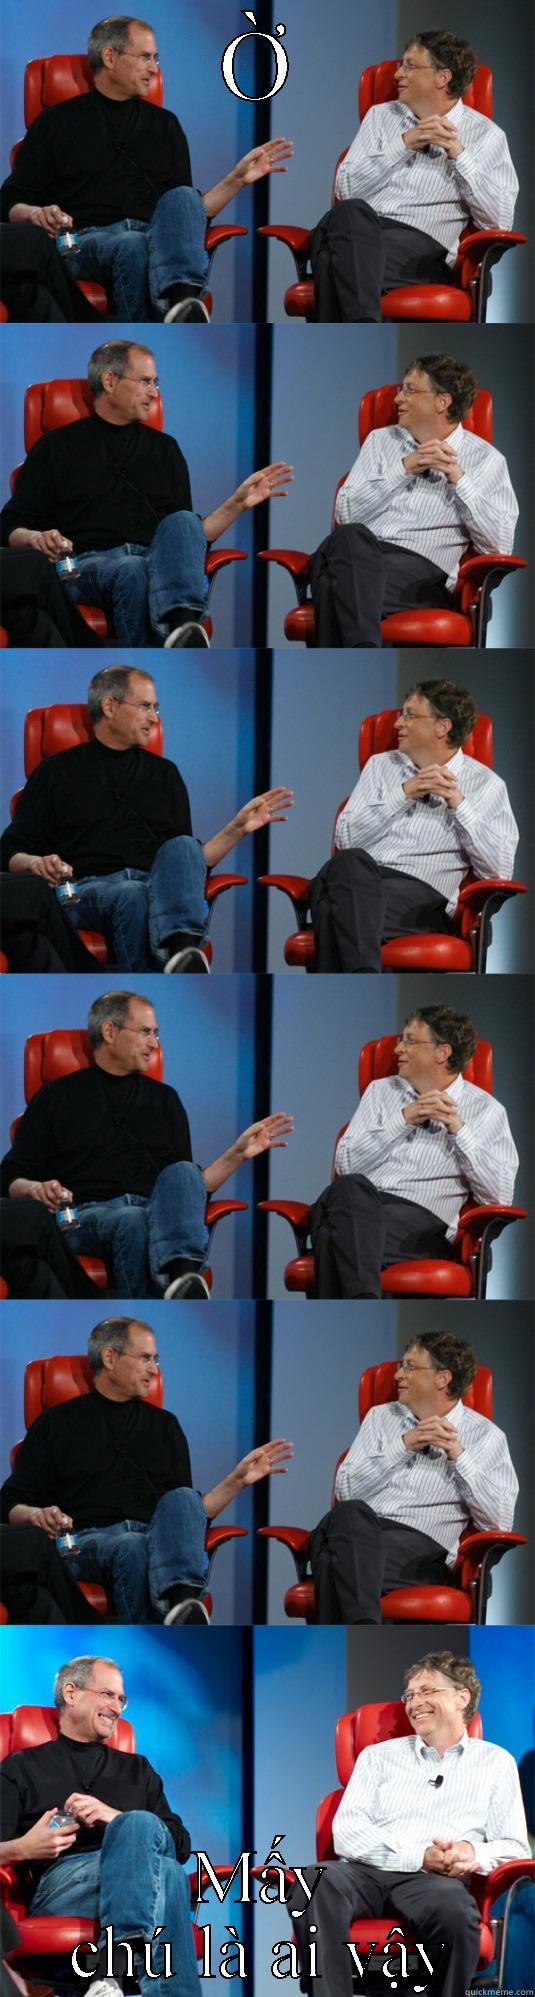 Ờ MẤY CHÚ LÀ AI VẬY Steve Jobs vs Bill Gates